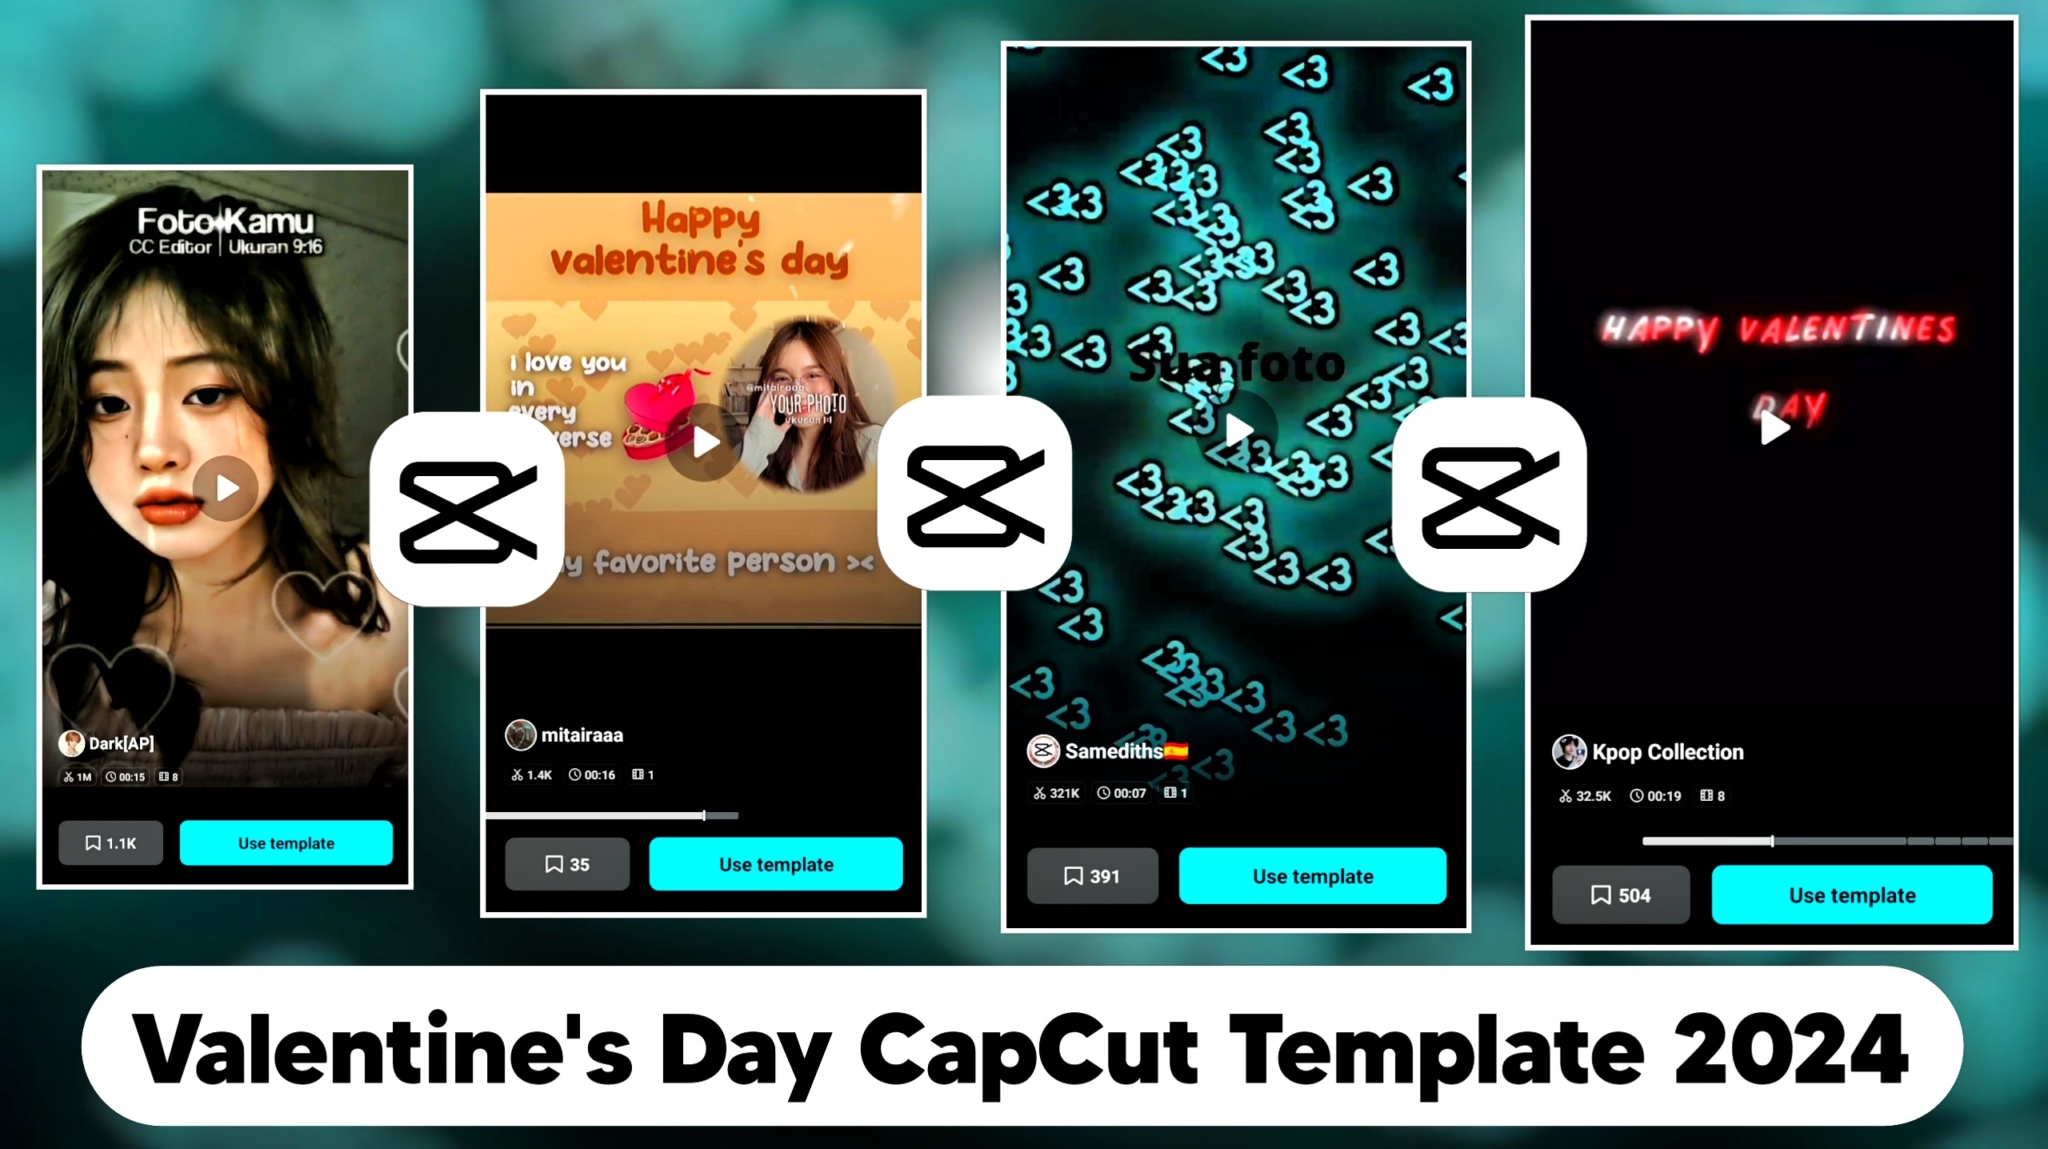 Valentine's Day CapCut Template